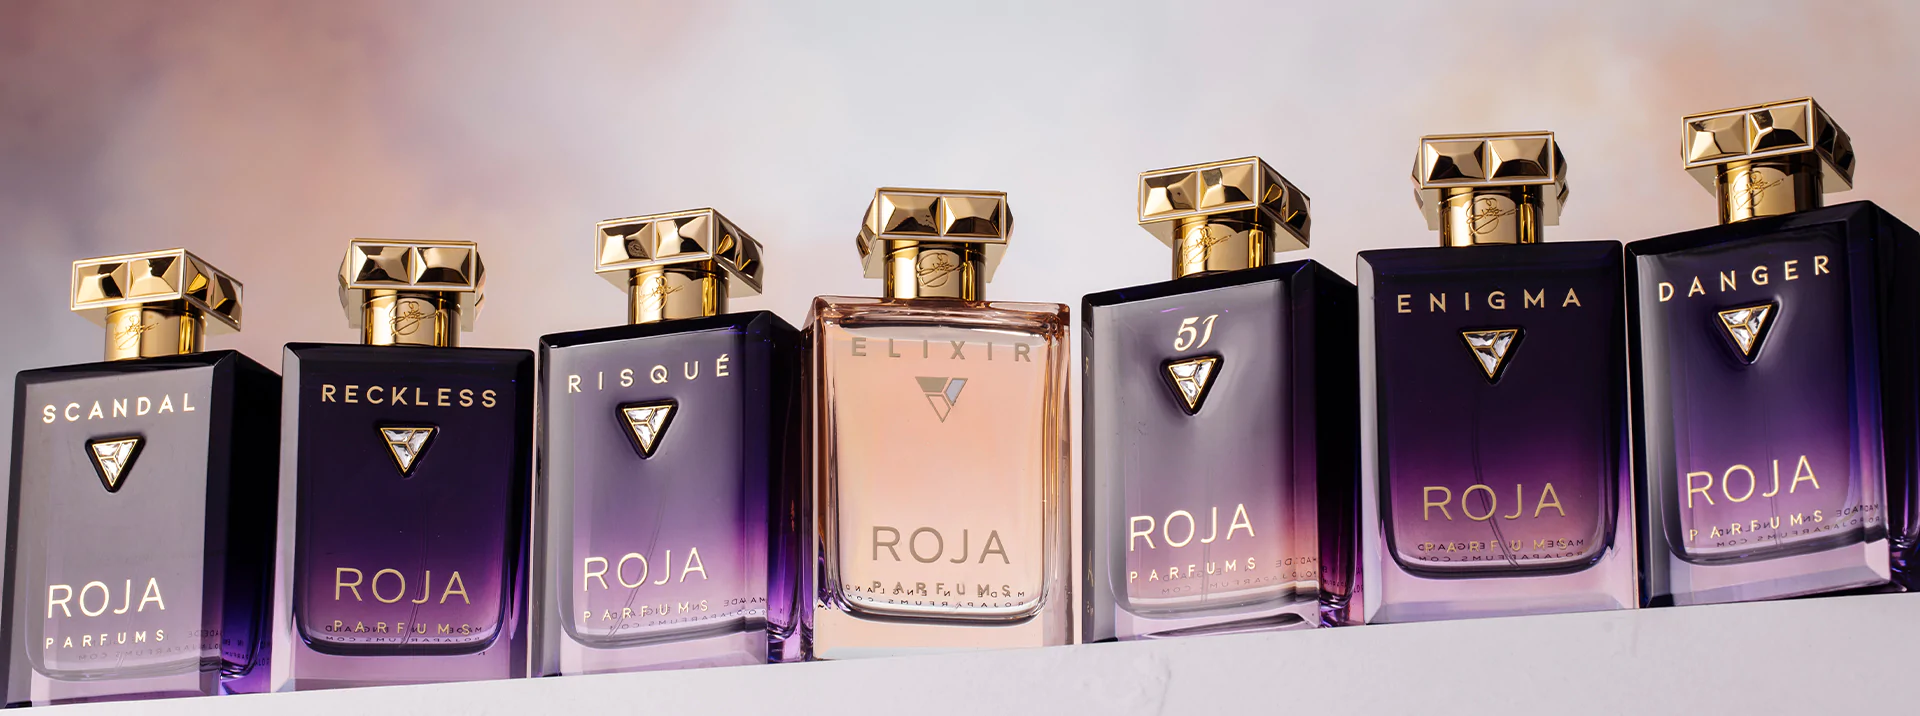 51 Pour Femme Essence de Parfum - ROJA